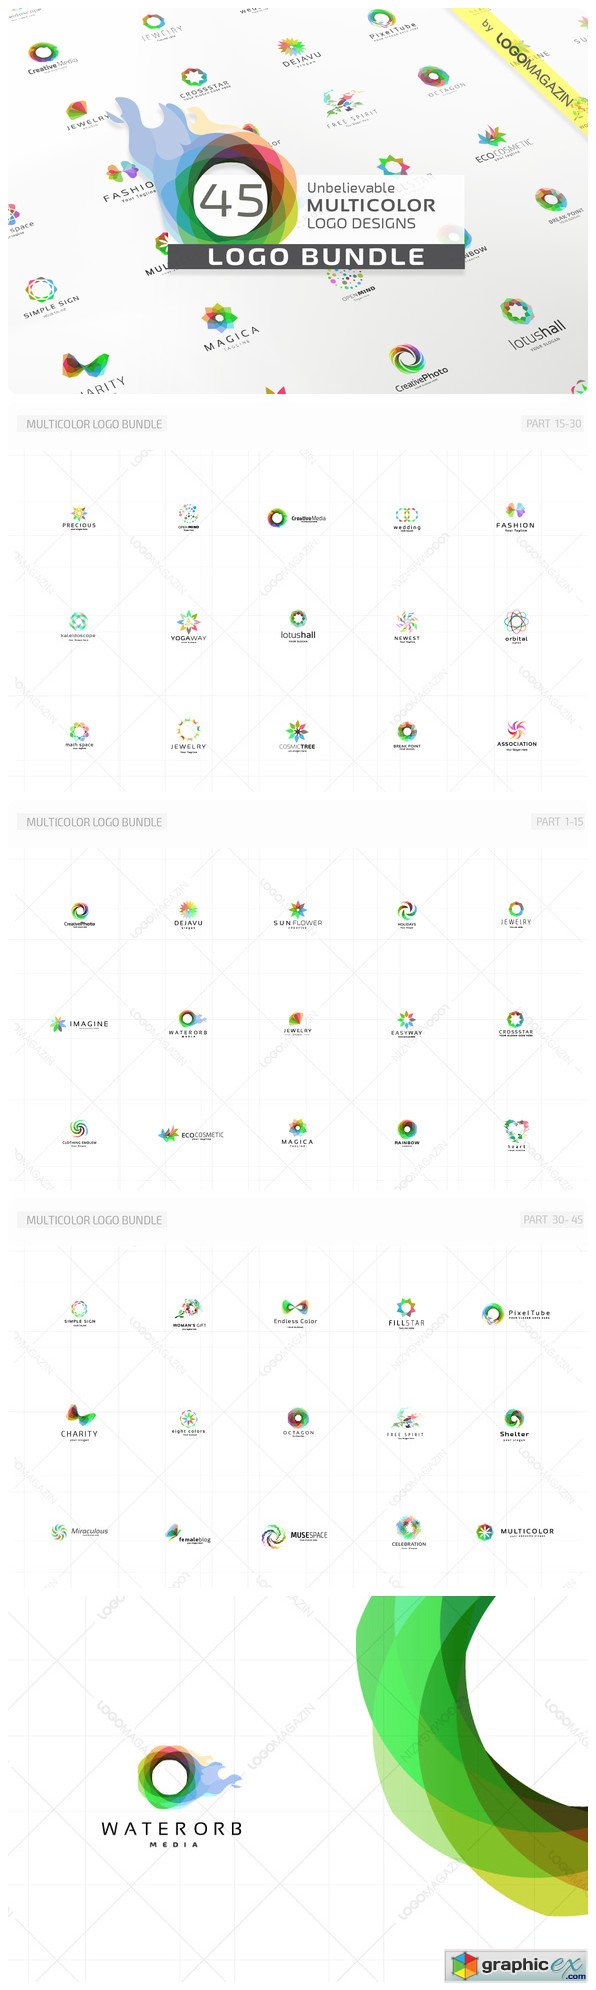 45 Multicolor Logos Bundle